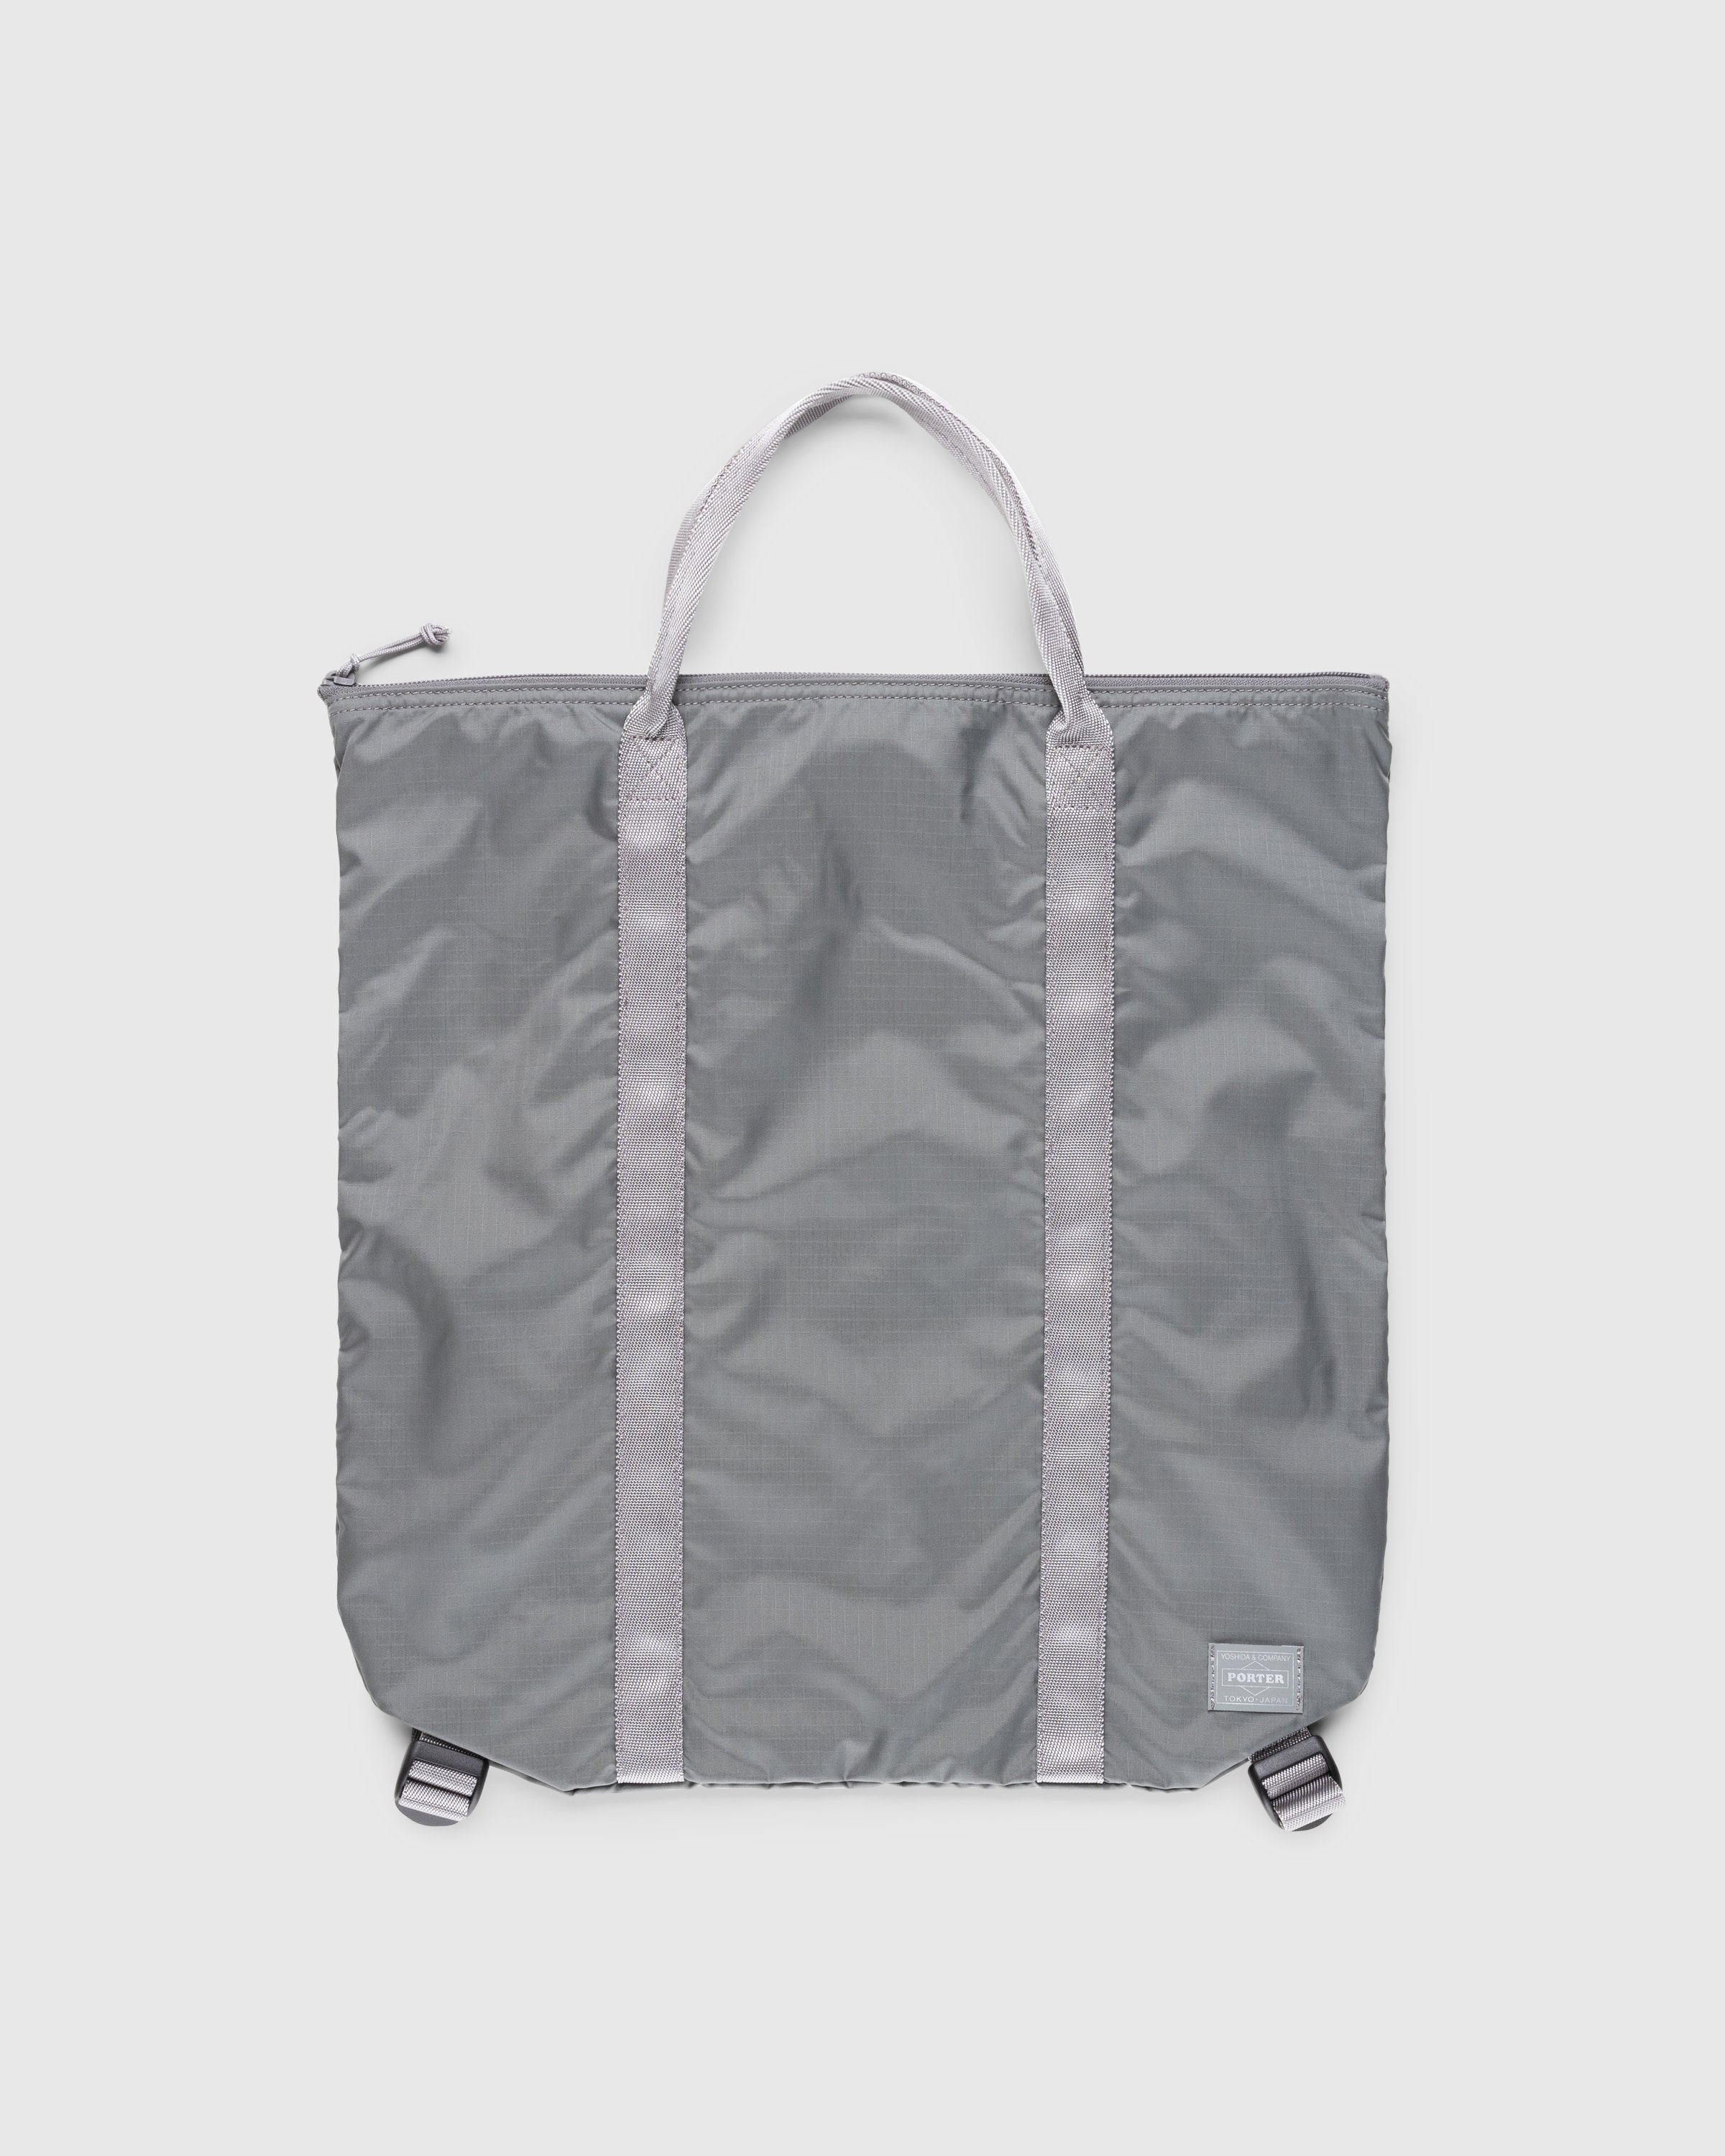 Porter-Yoshida & Co. - Flex 2-Way Tote Bag Grey - Accessories - Grey - Image 1